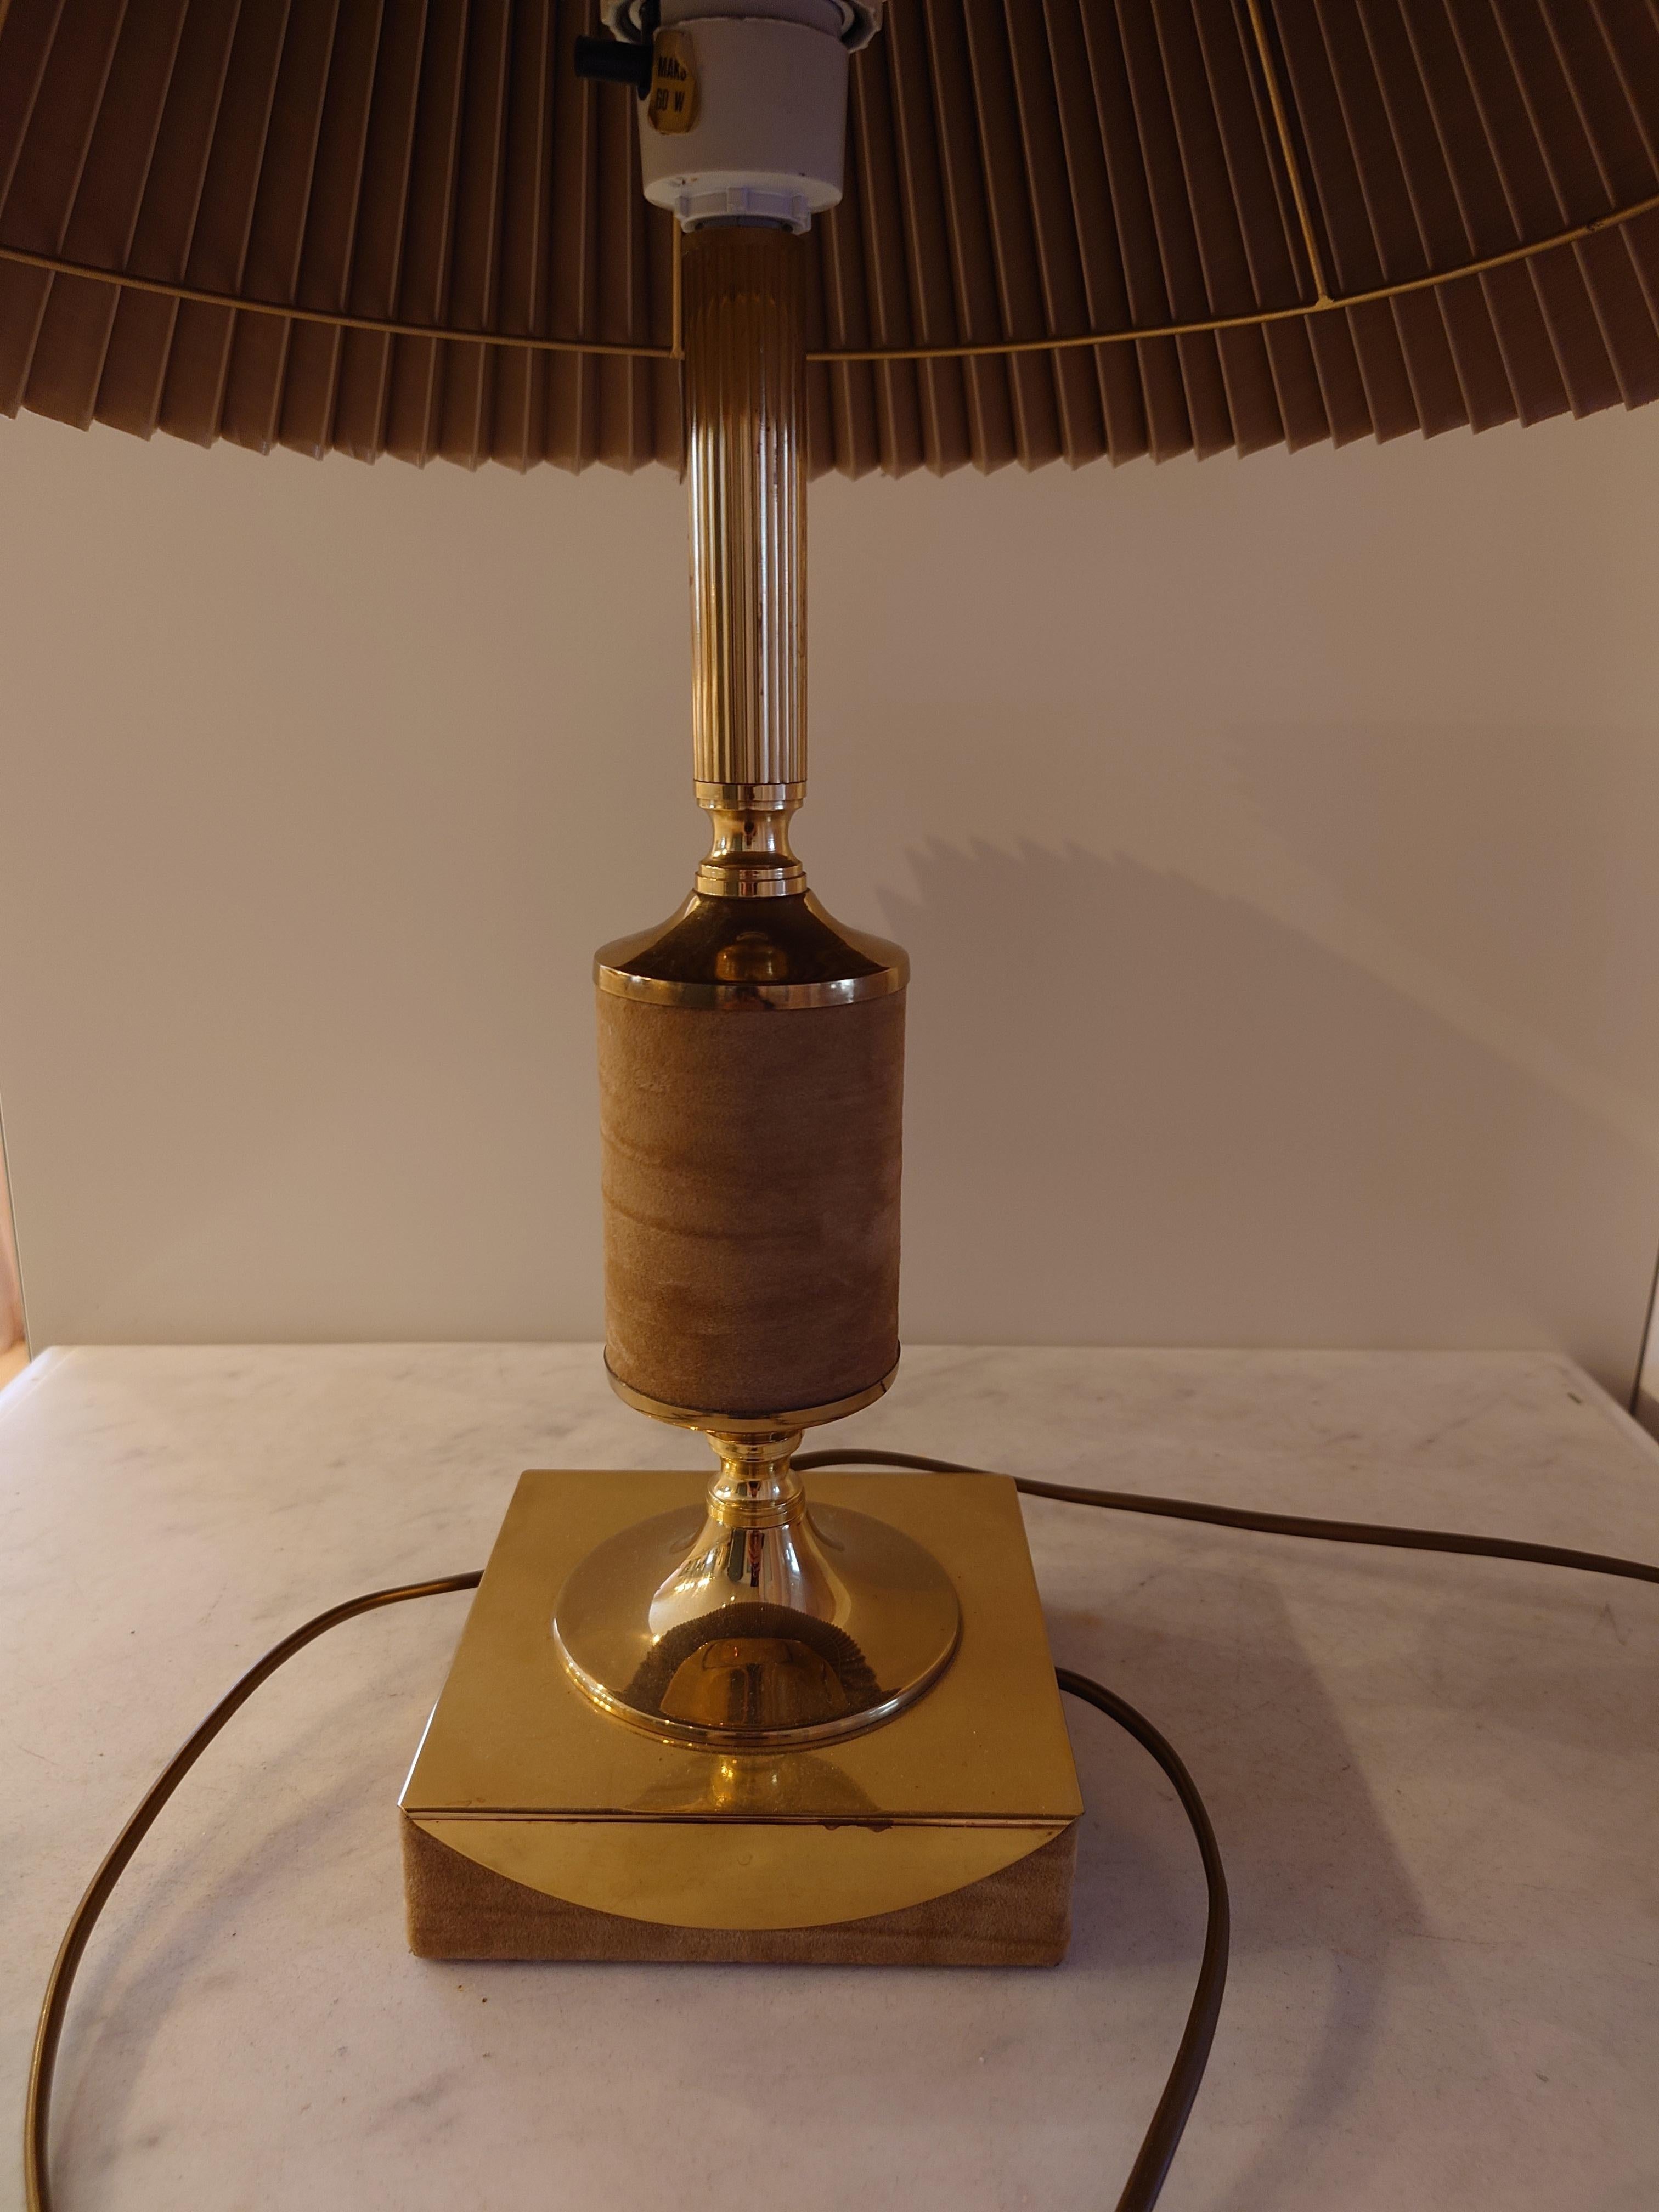 
Tr & Company ist ein norwegischer Lampenhersteller, der für sein exquisites Design bekannt ist. Sie haben eine stilvolle Tischleuchte aus massivem Messing geschaffen, die einen luxuriösen und robusten Eindruck macht. Die Lampe verfügt über einen